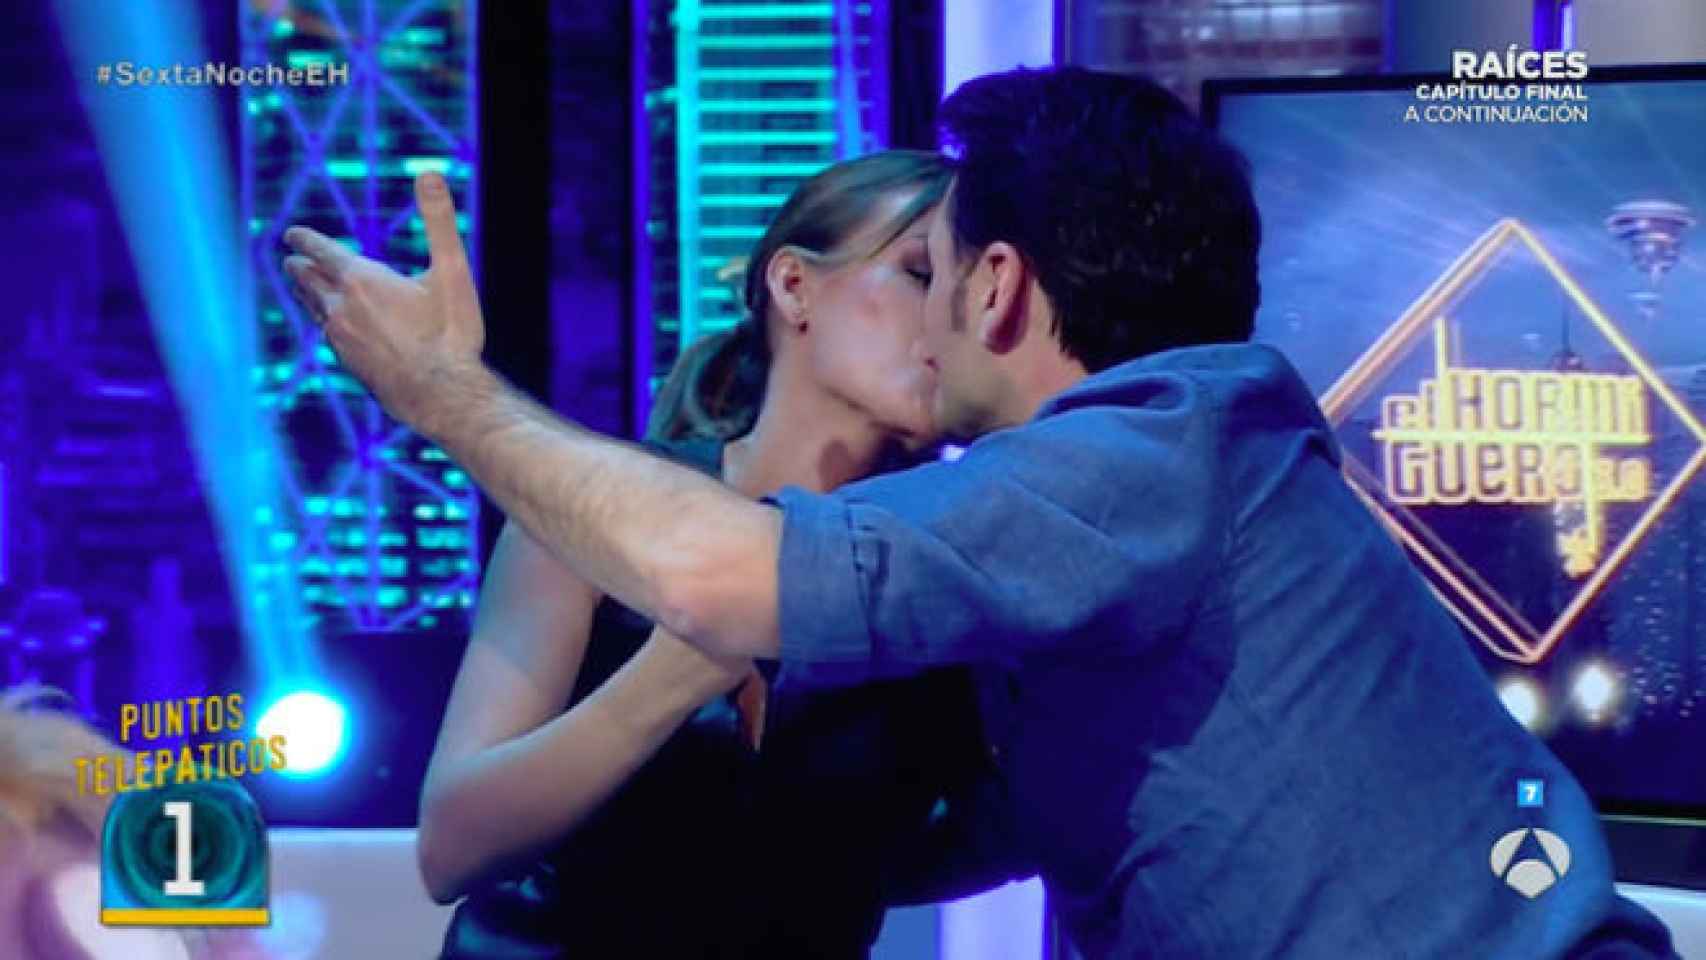 Iñaki y Andrea se besan en directo.